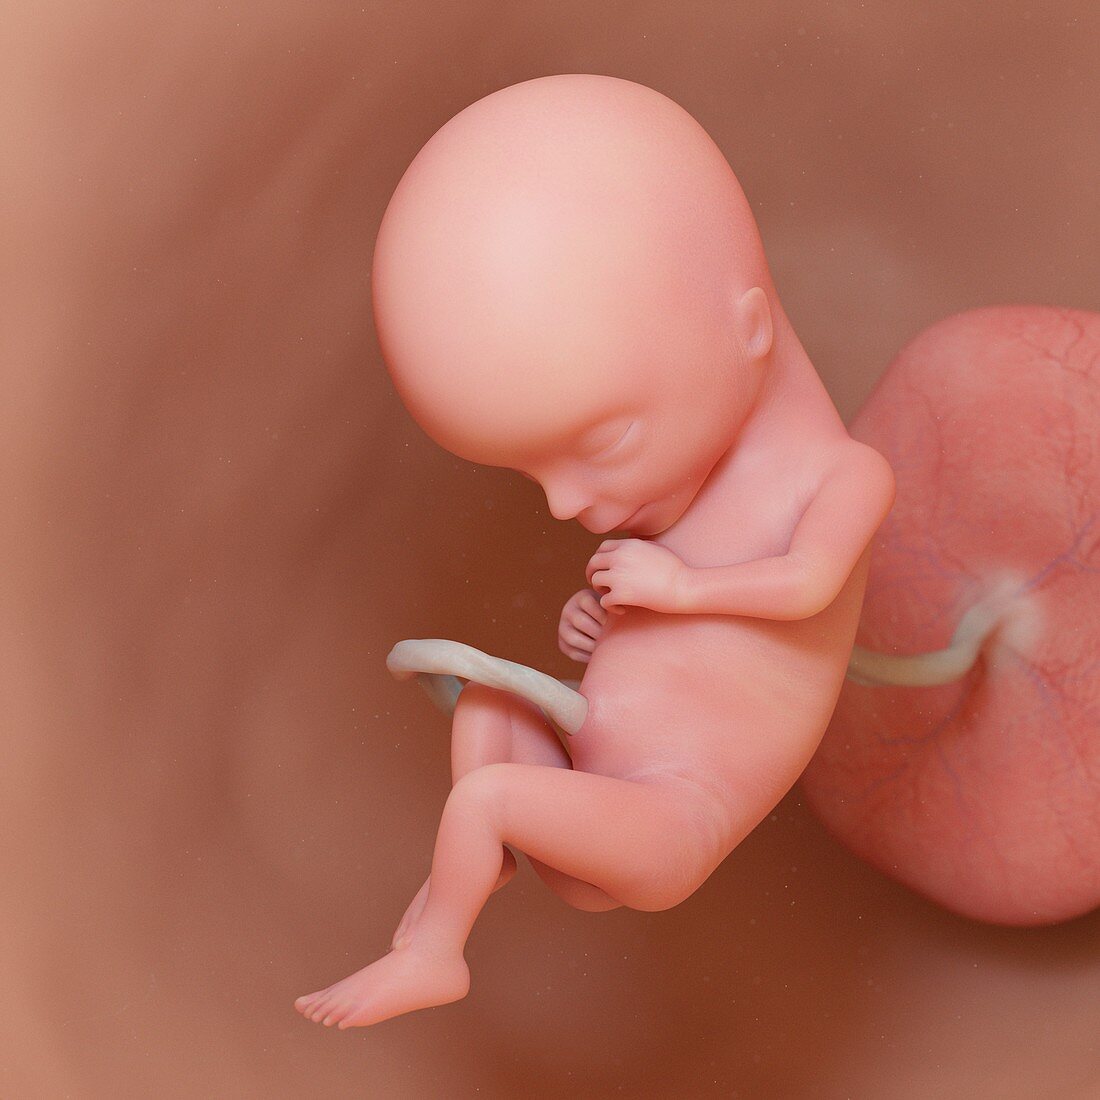 Fetus at week 15, illustration